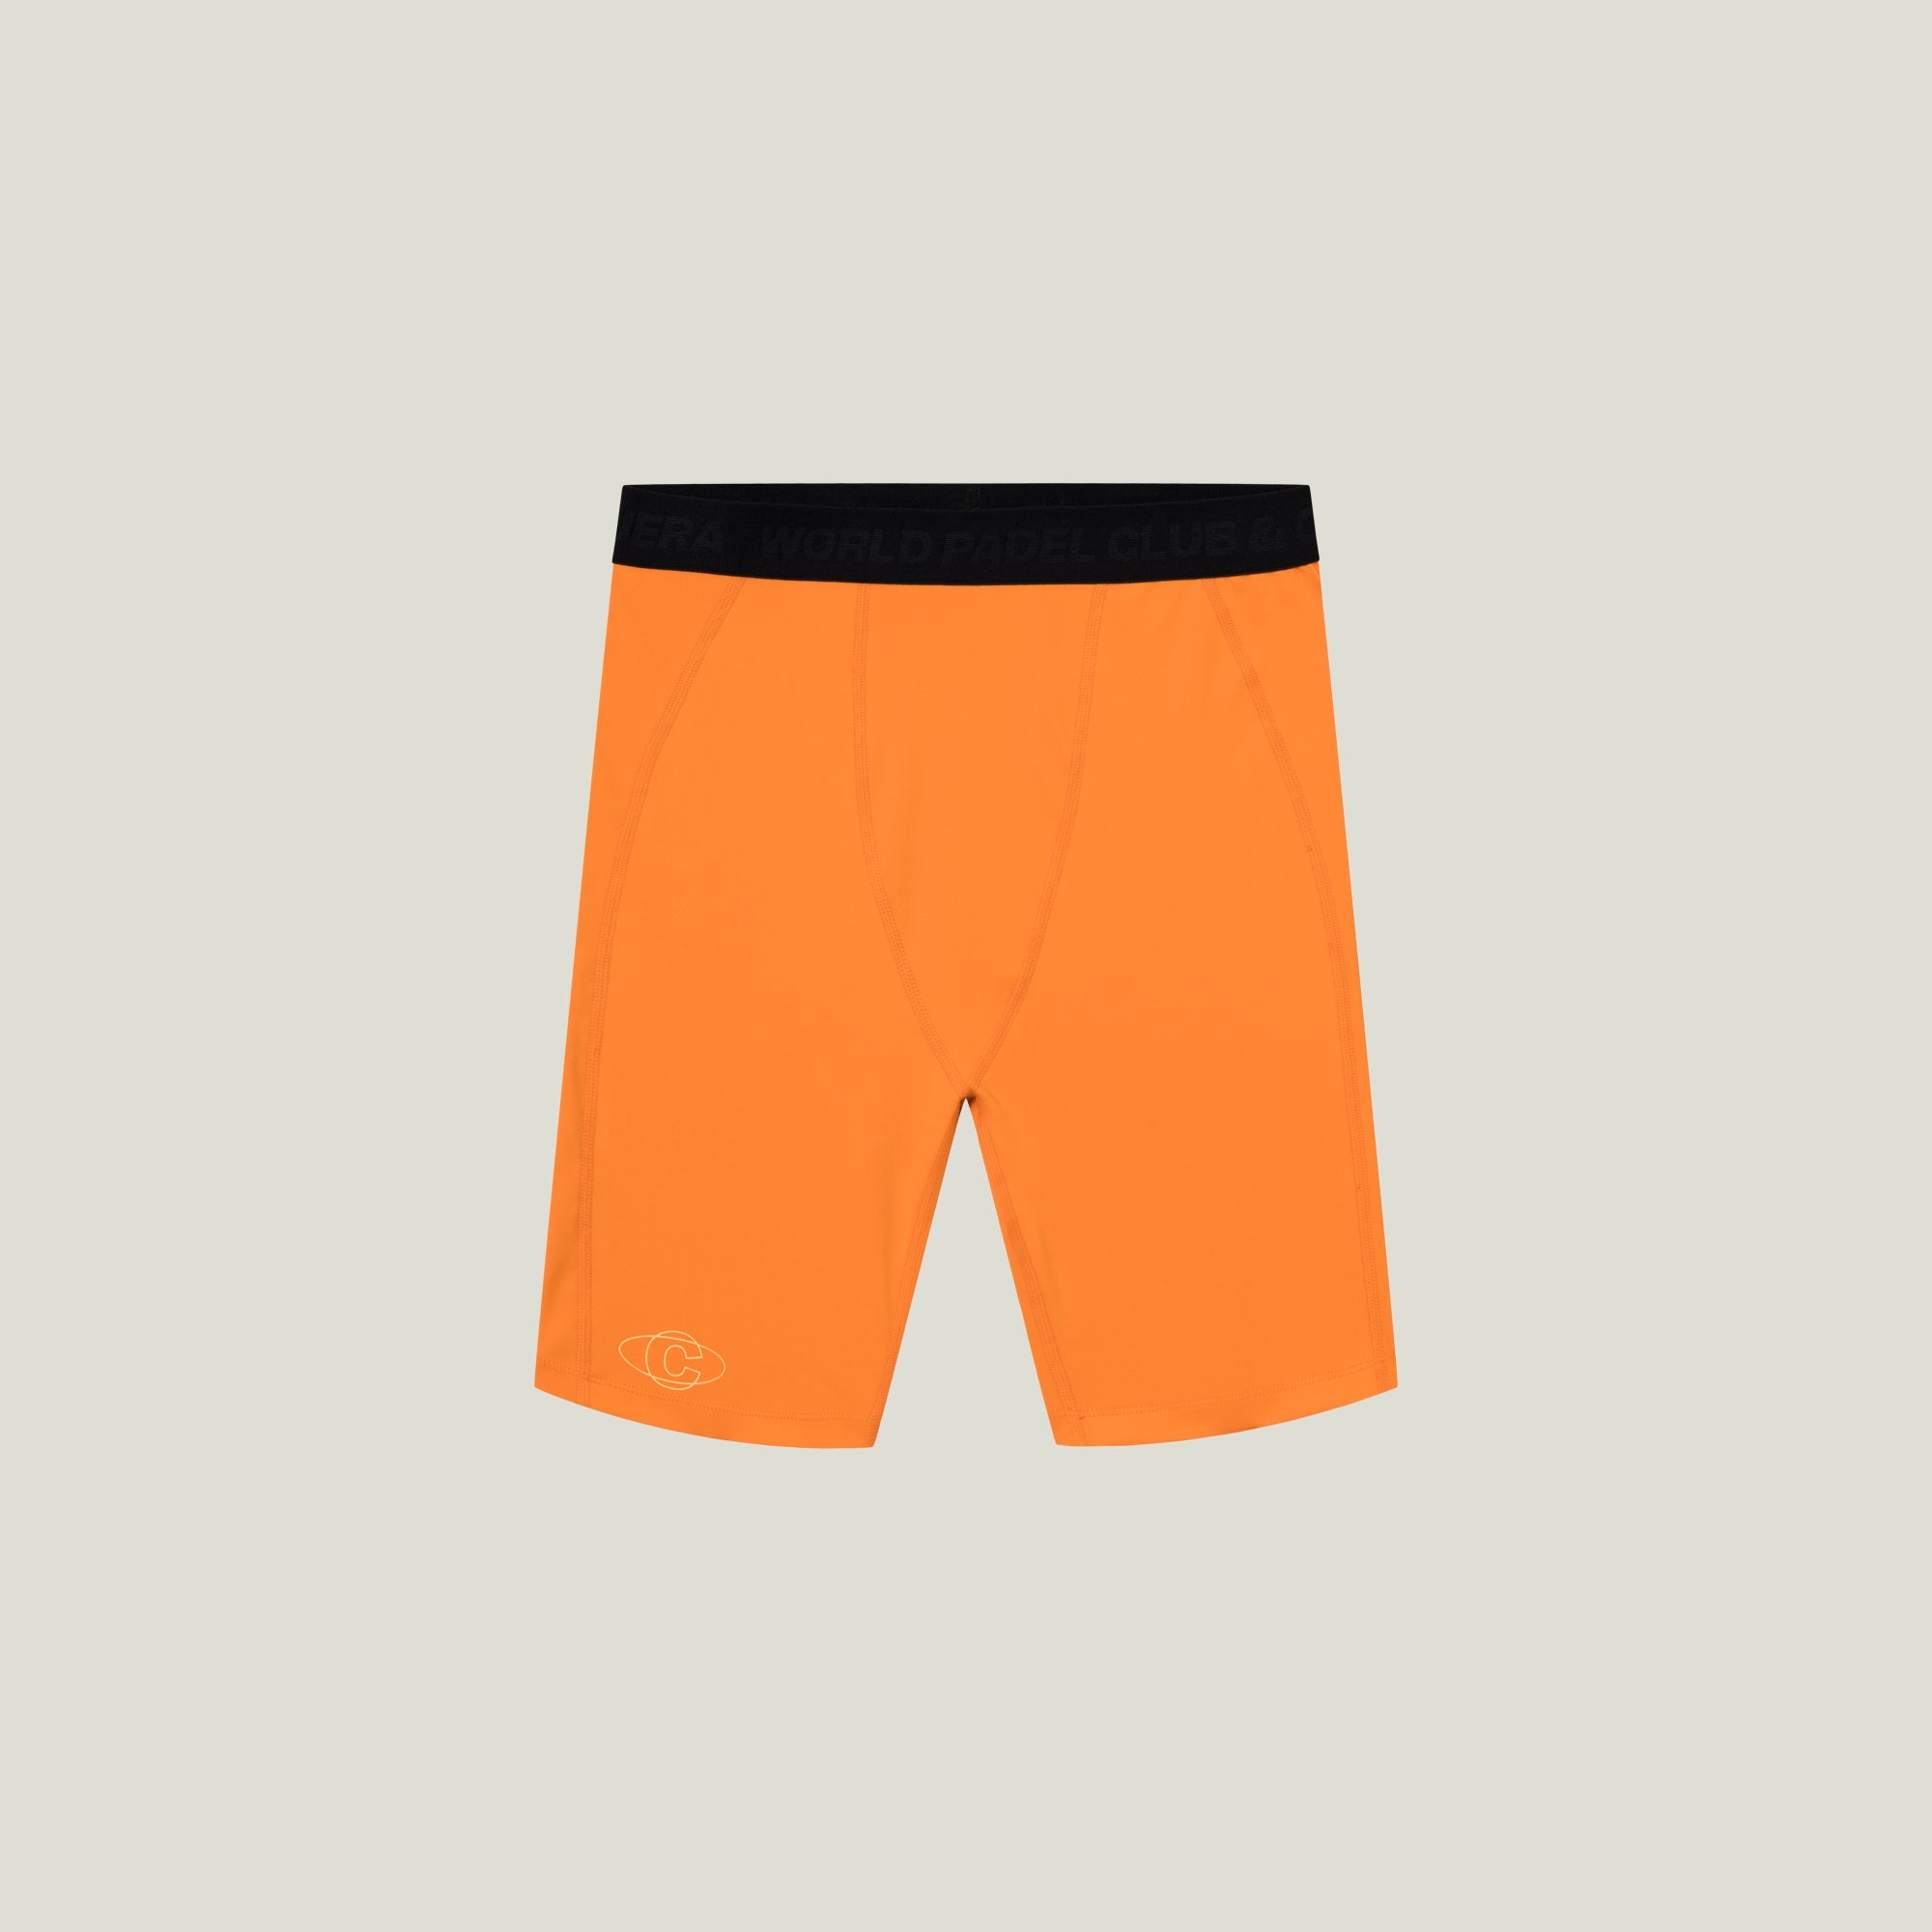 Cuera Oncourt Layer Tights (Orange) - S